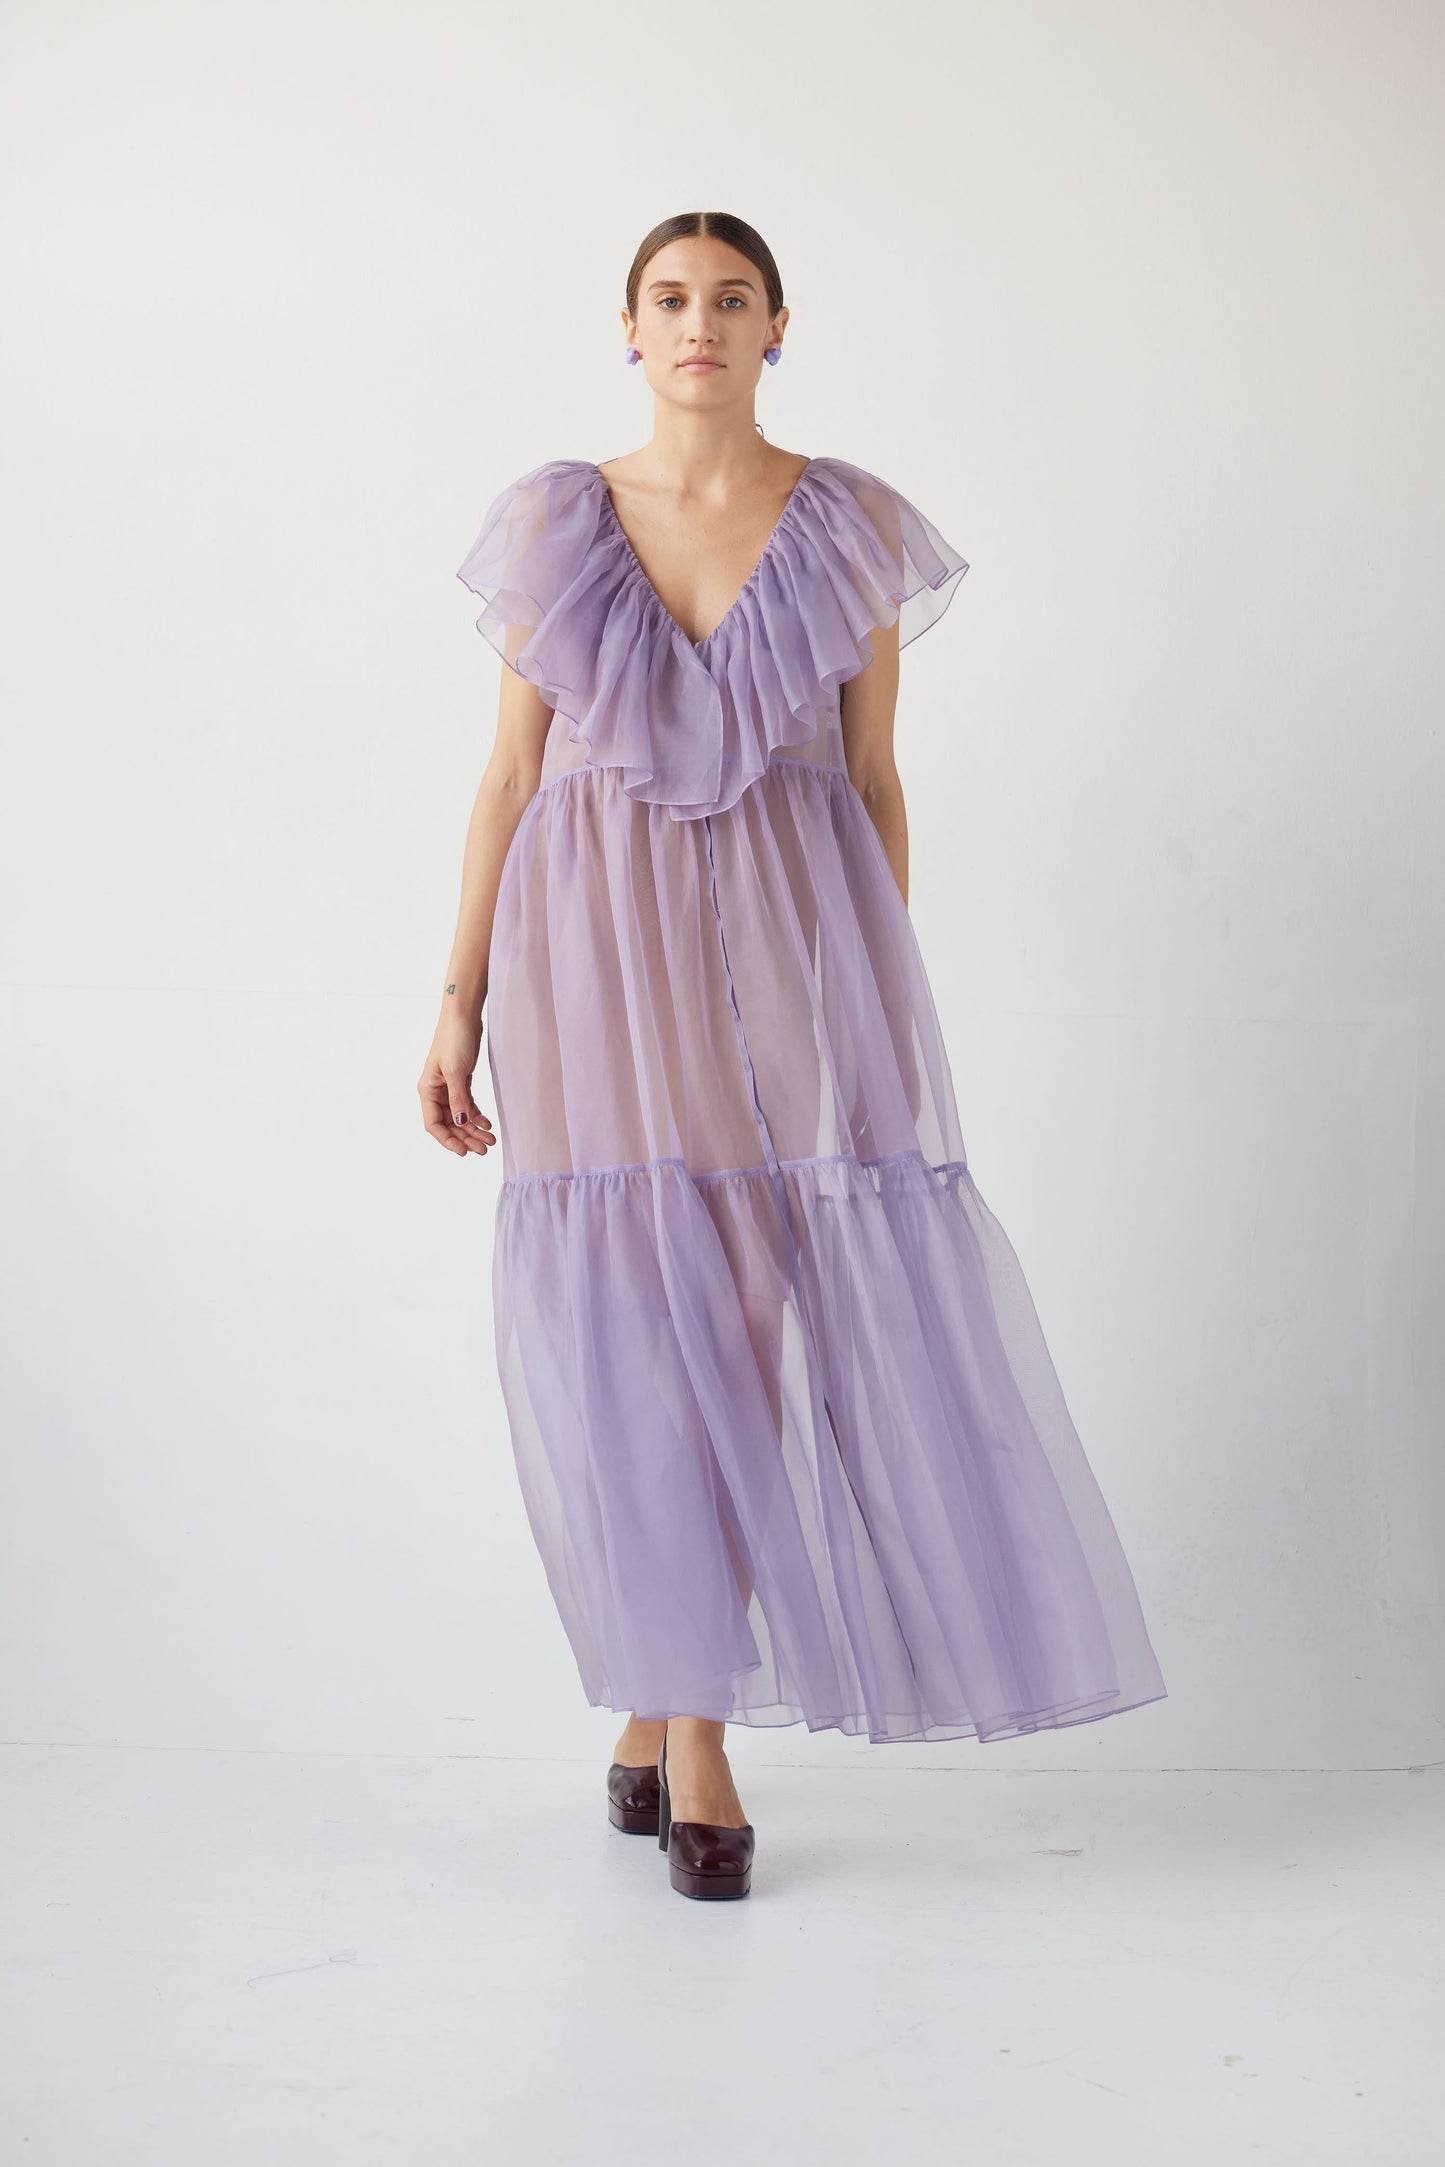 Papillon Dress in Silk Organza Dresses Christine Alcalay Wisteria Organza XS/S 